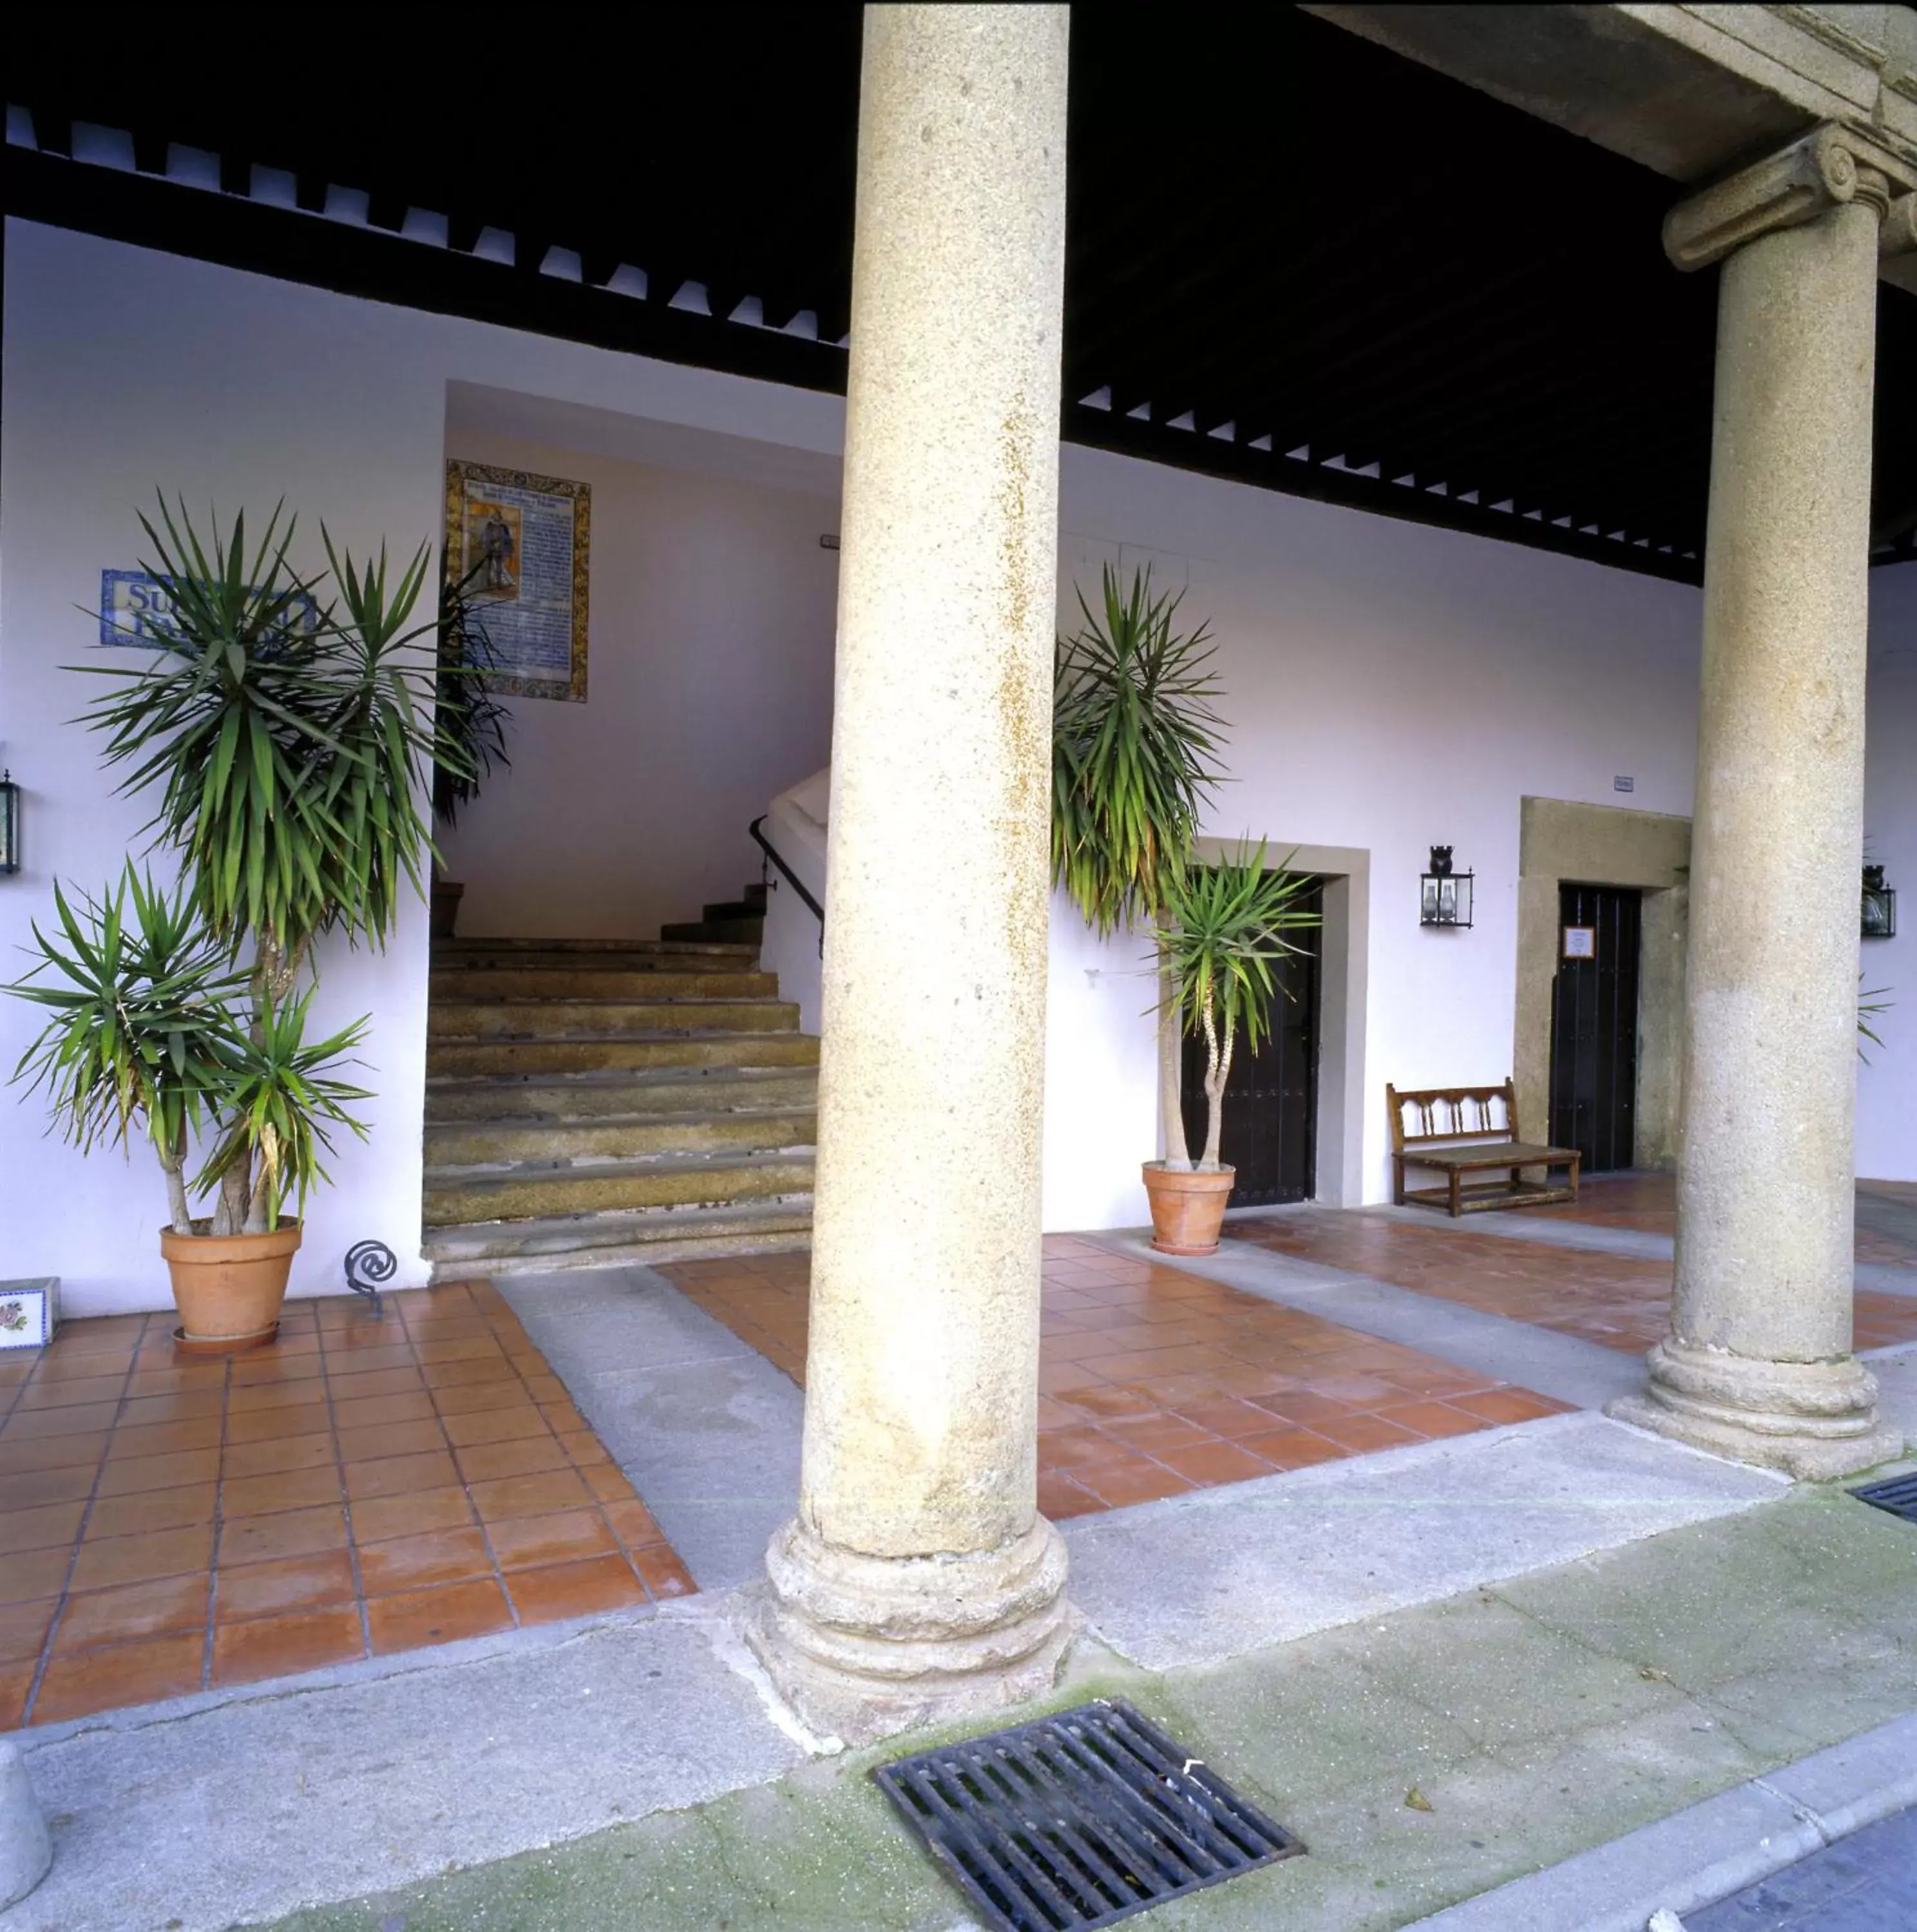 Lobby or reception in Parador de Oropesa